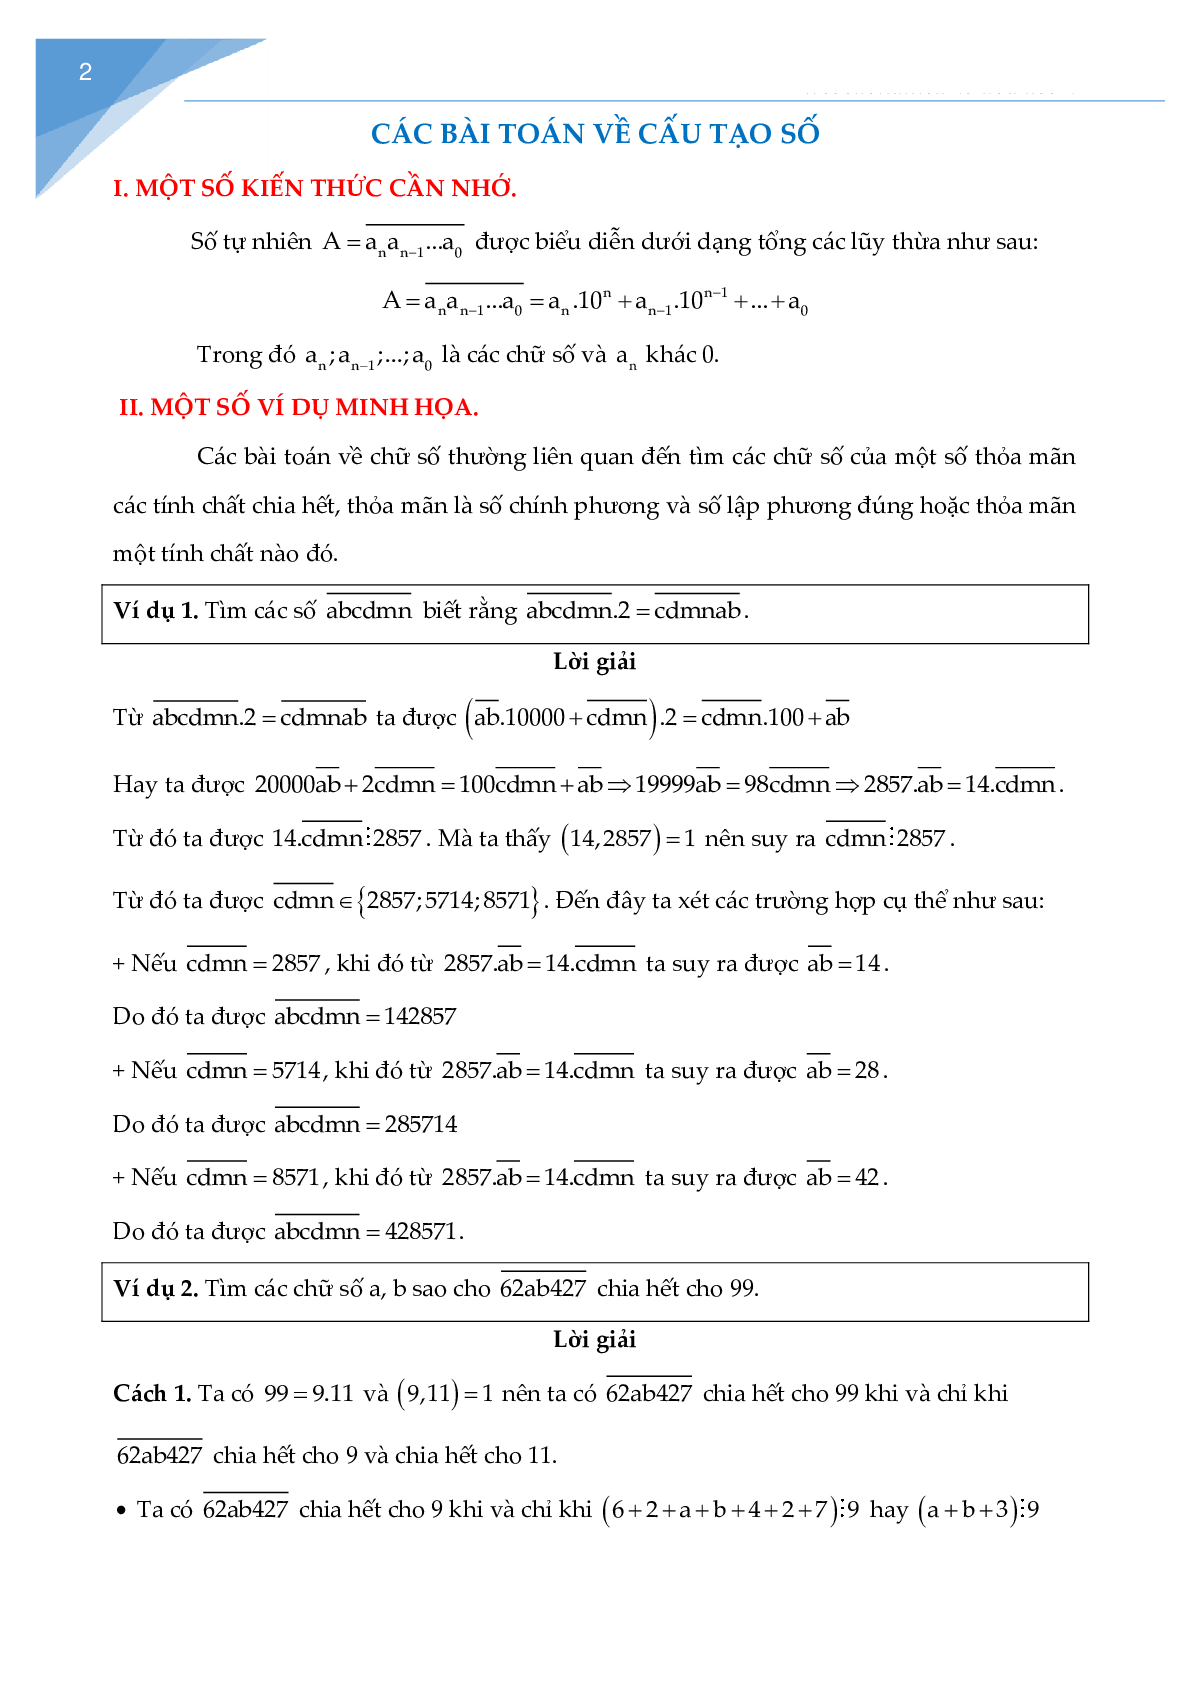 Các bài toán về cấu tạo số (trang 3)